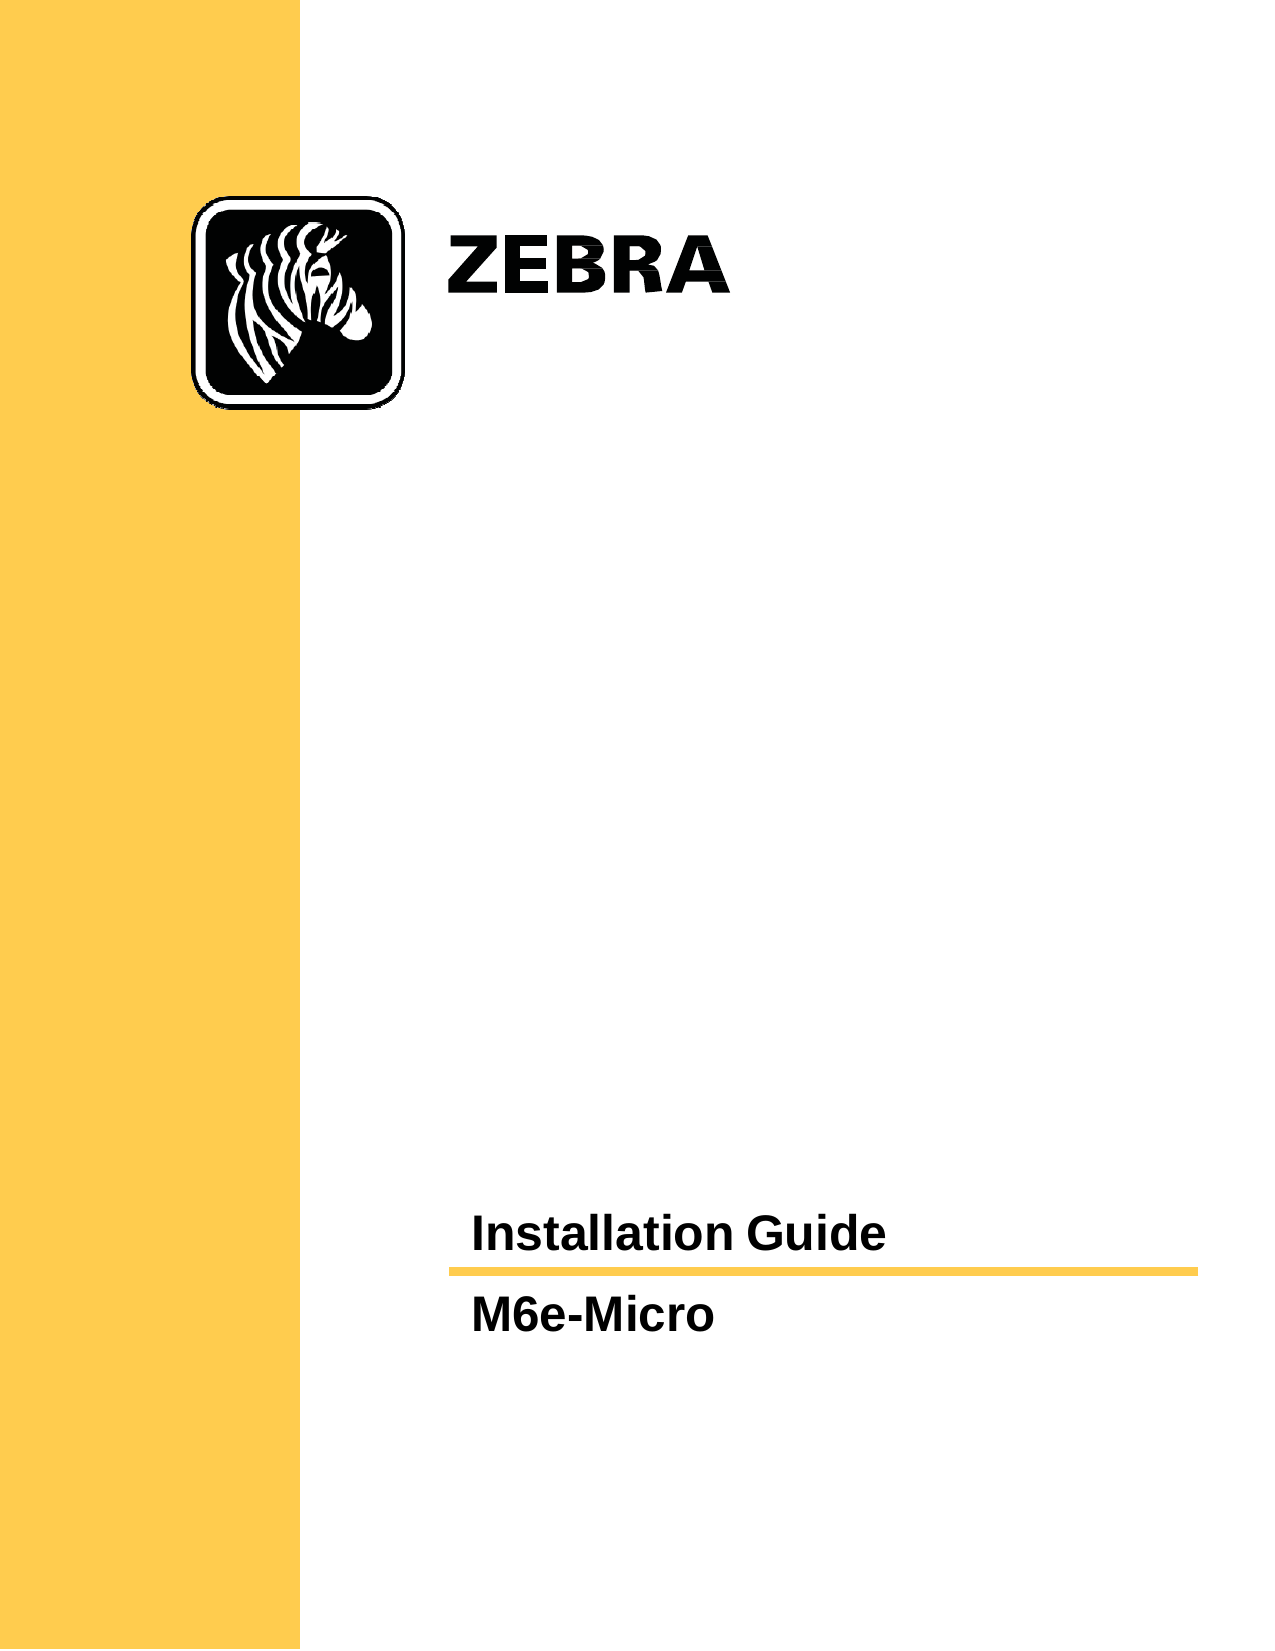  Installation Guide   M6e-Micro   